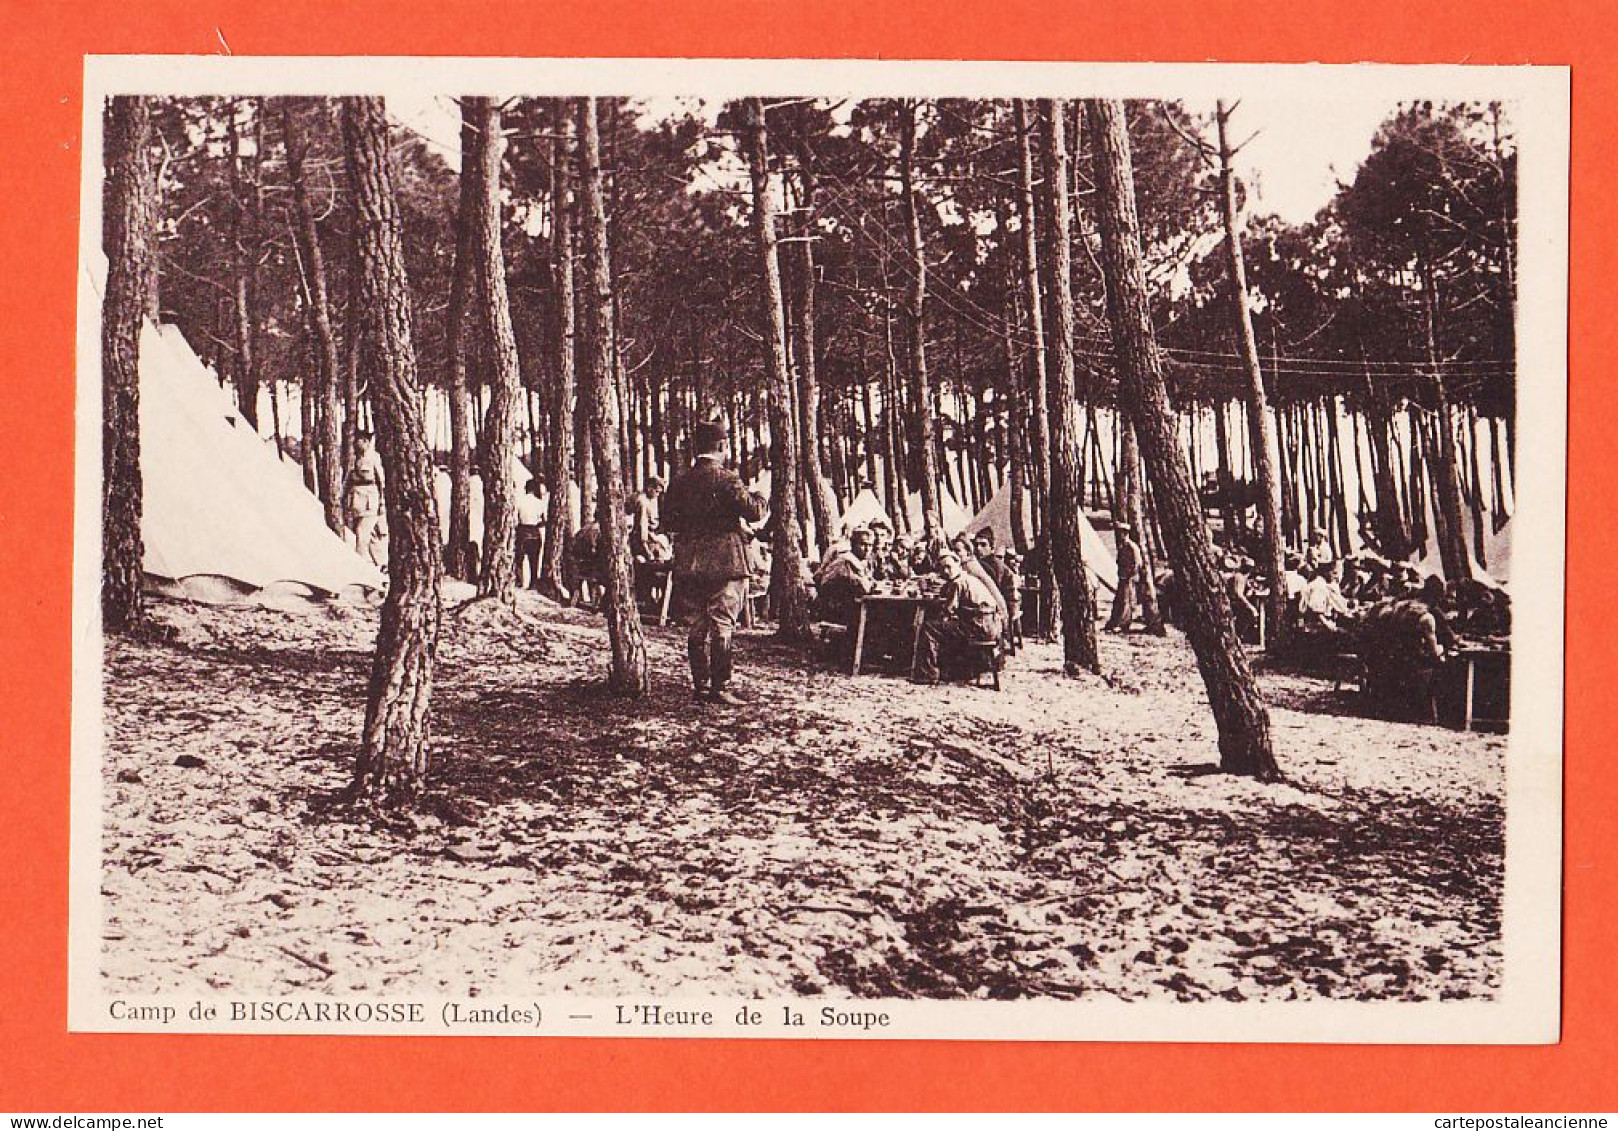 01396 / A Saisir BISCAROSSE 40-Landes HEURE De La SOUPE Camp Militaires 1930s Photo VIGNES Castets Edit SAUVAGE - Biscarrosse